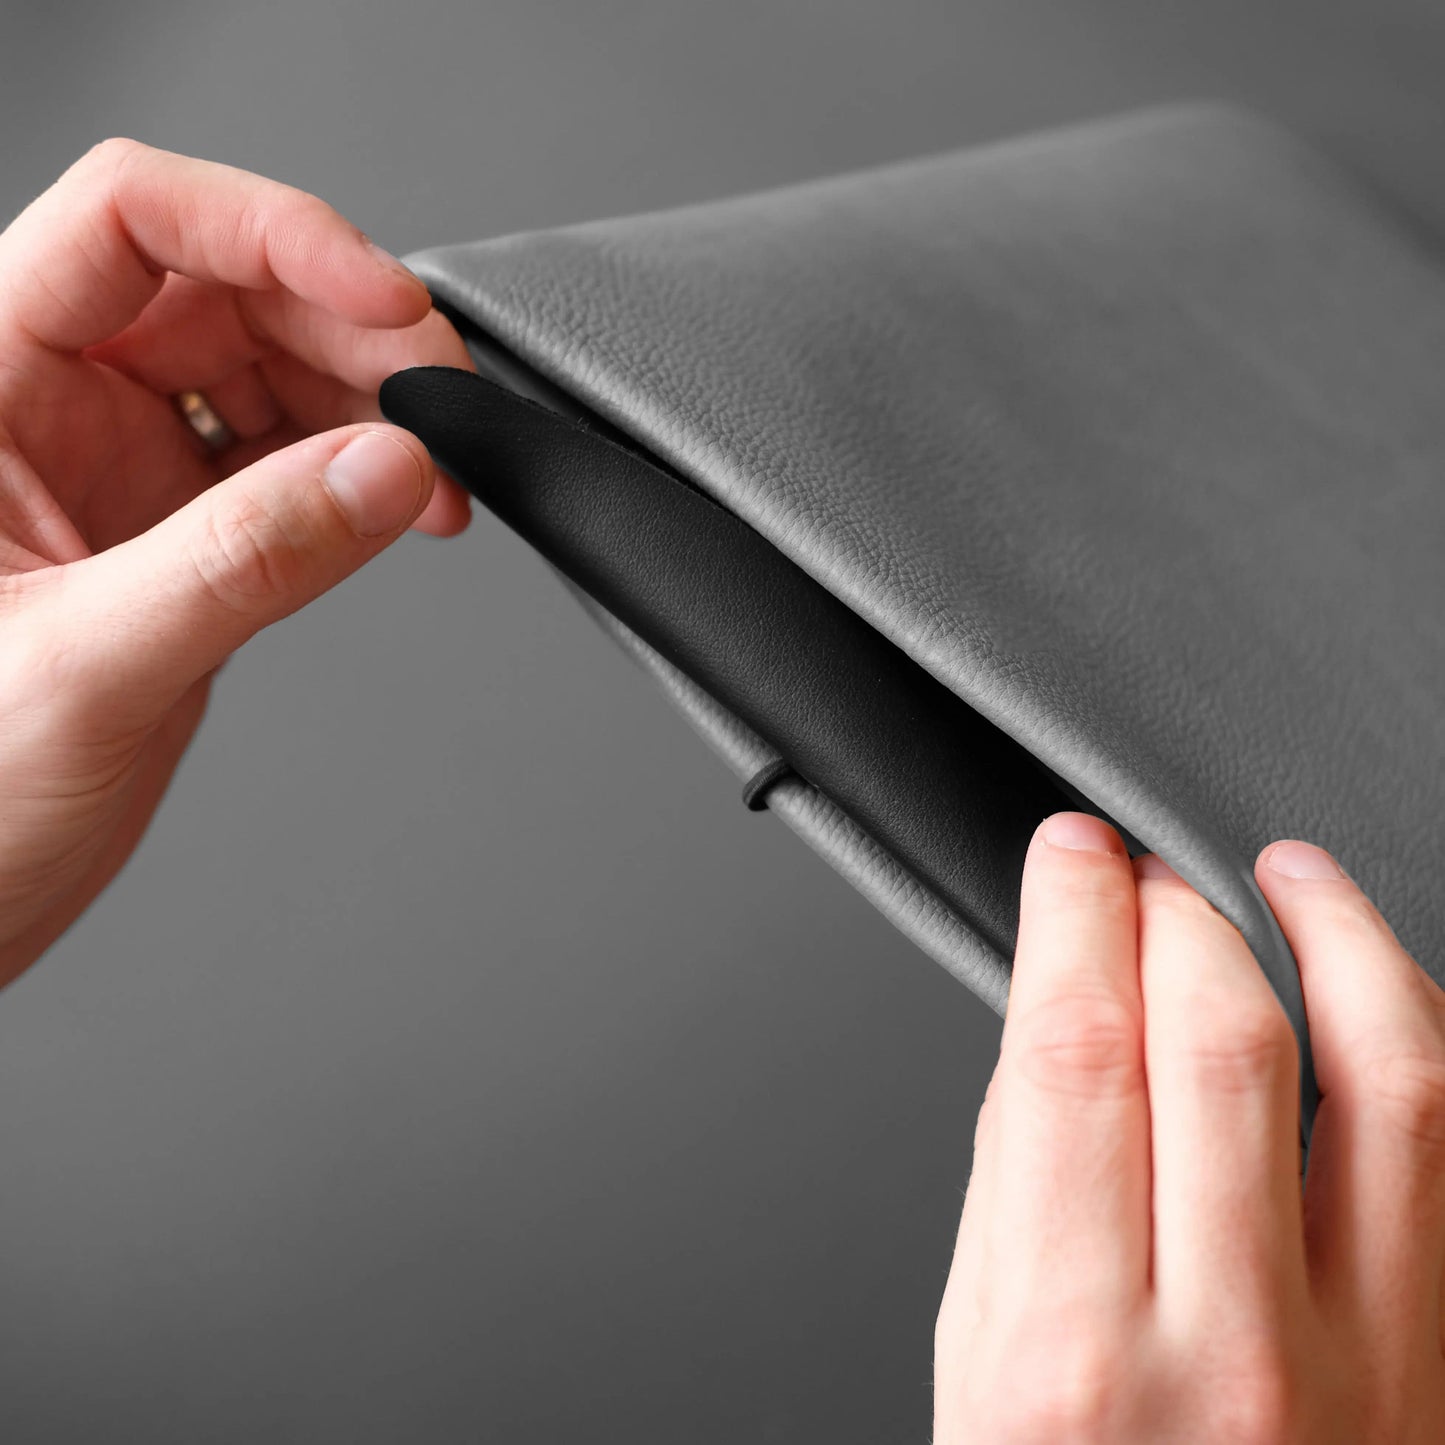 graue Notebookhülle wird mit schwarzer Verschlussklappe geschlossen